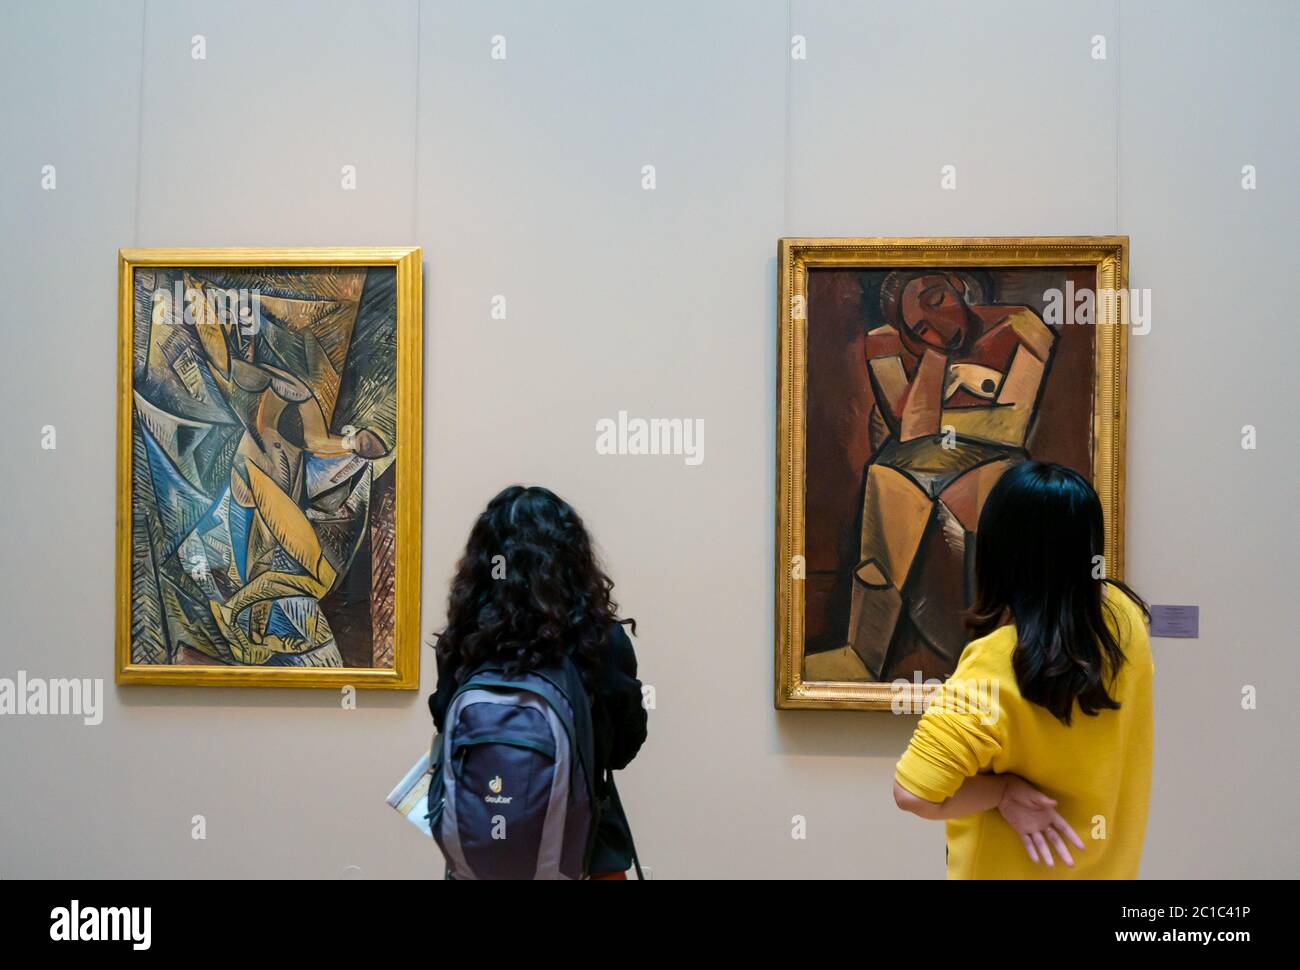 Frauen, die Pablo Picasso kubistische Gemälde betrachten: Tanz der Schleier & sitzende Frau, Hermitage Museum, St. Petersburg, Russland Stockfoto